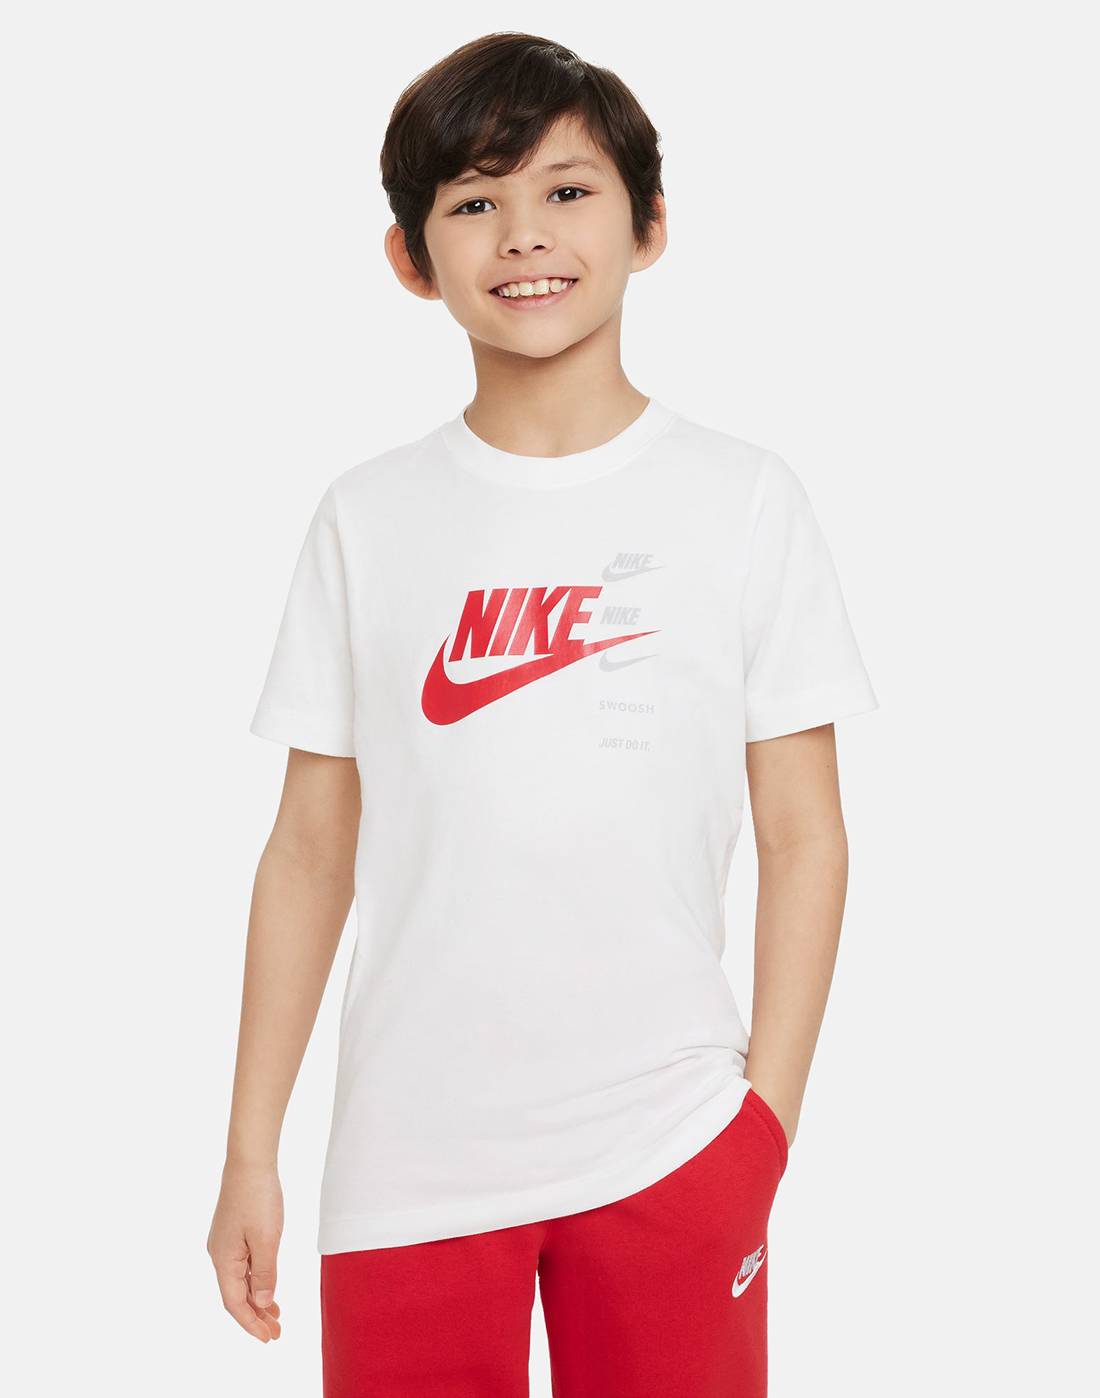 Nike Older Boys Logo T-Shirt - White | Life Style Sports UK